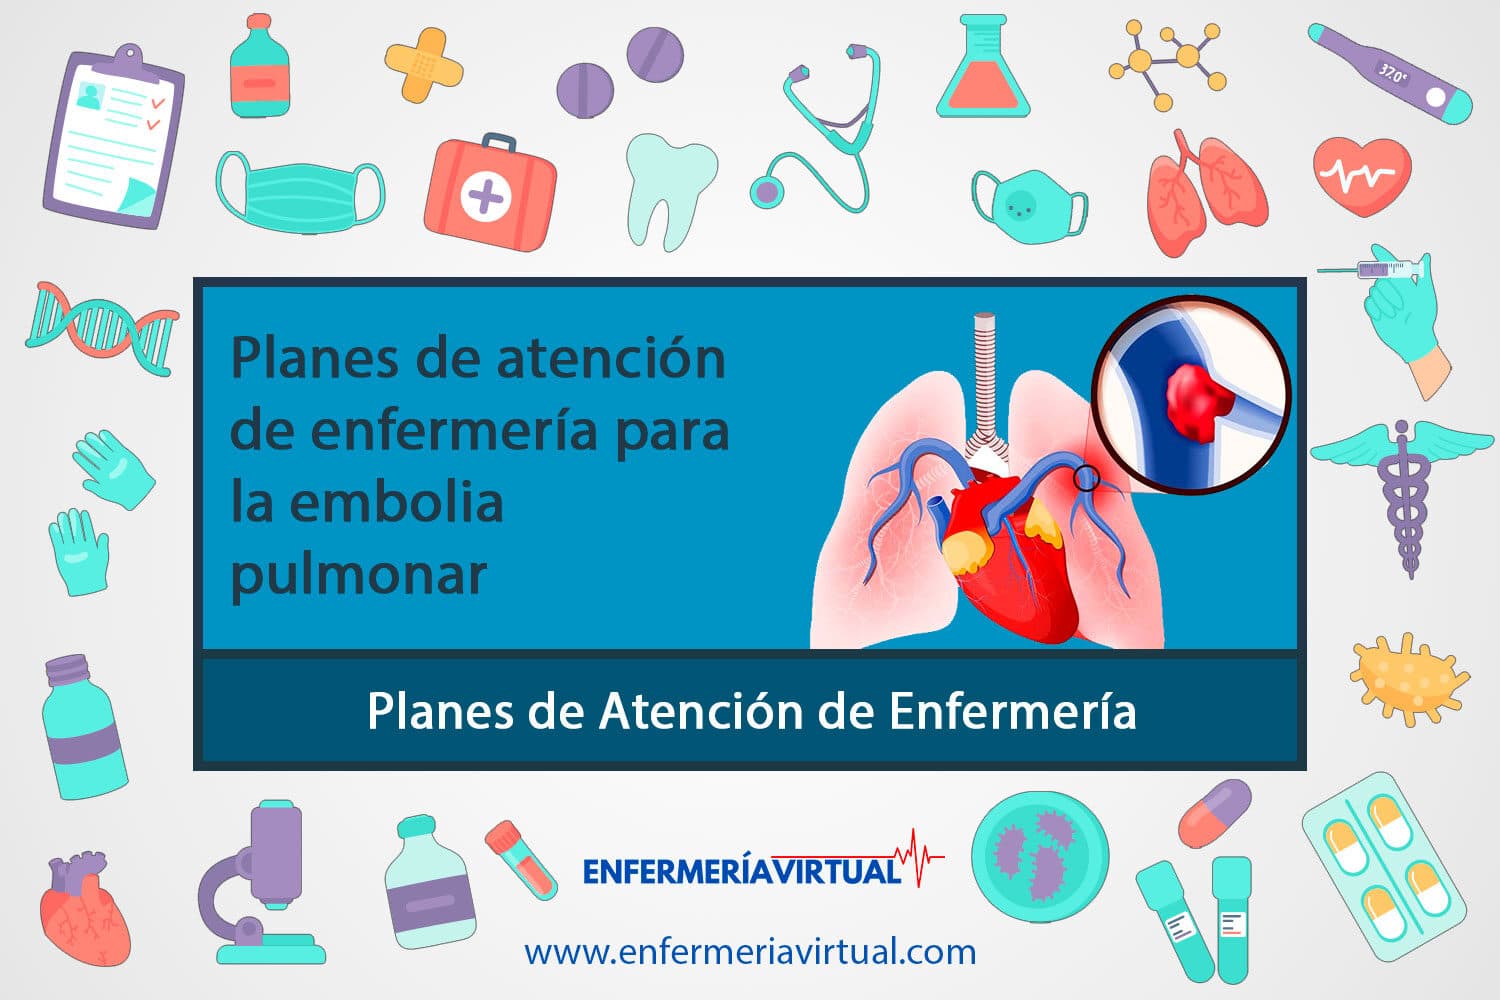 Planes de atención de enfermería para la embolia pulmonar